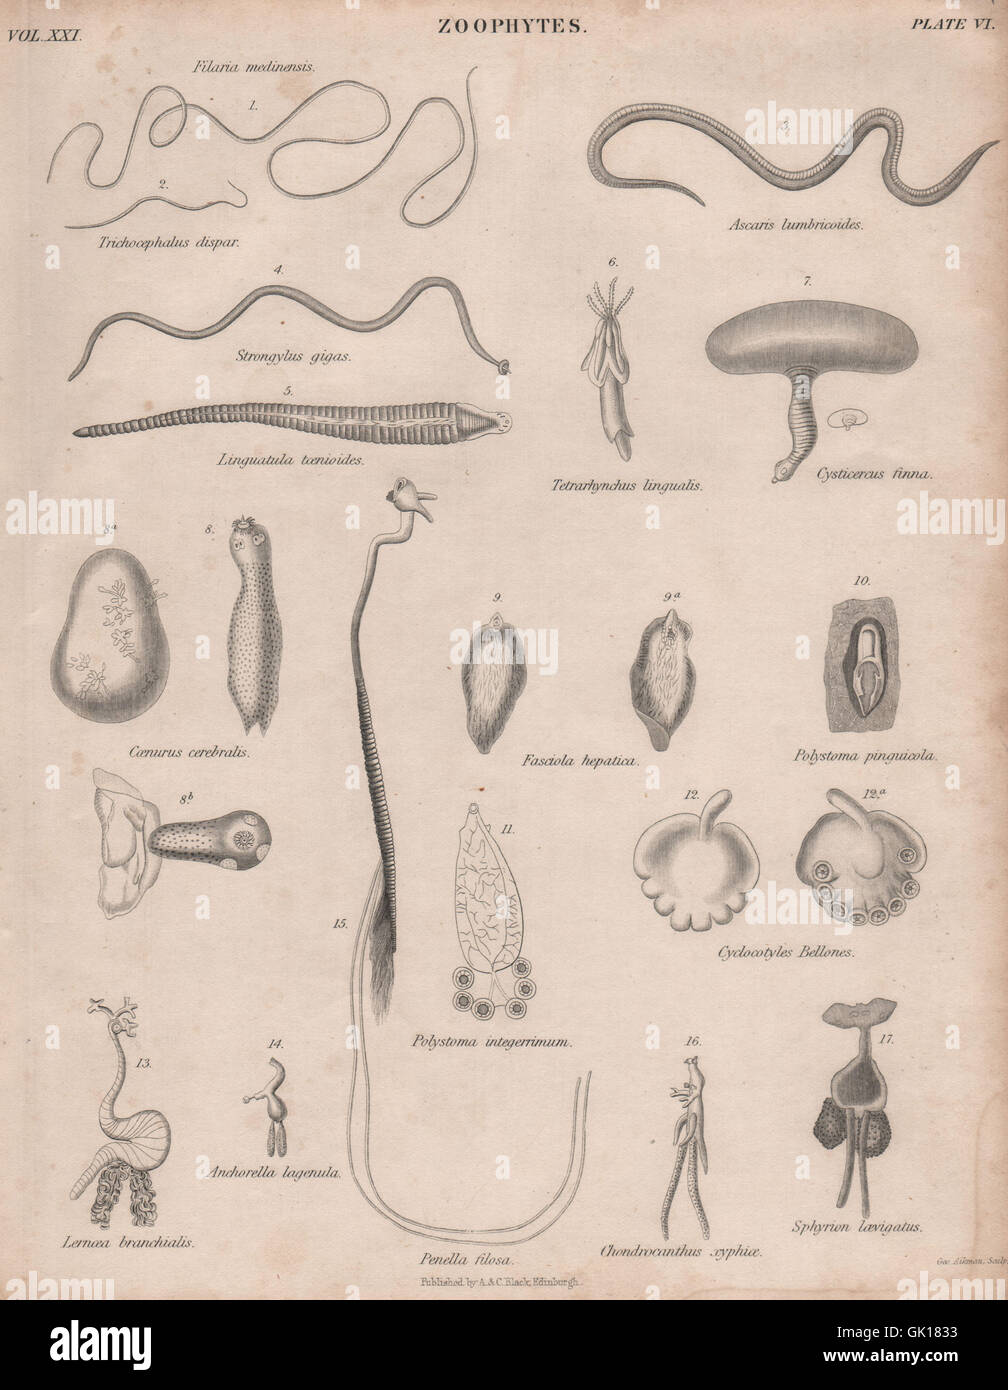 Zoophytes. Filaria medinensis. Trichocephalus dispar. Ascaris lumbricoides, 1860 Stock Photo